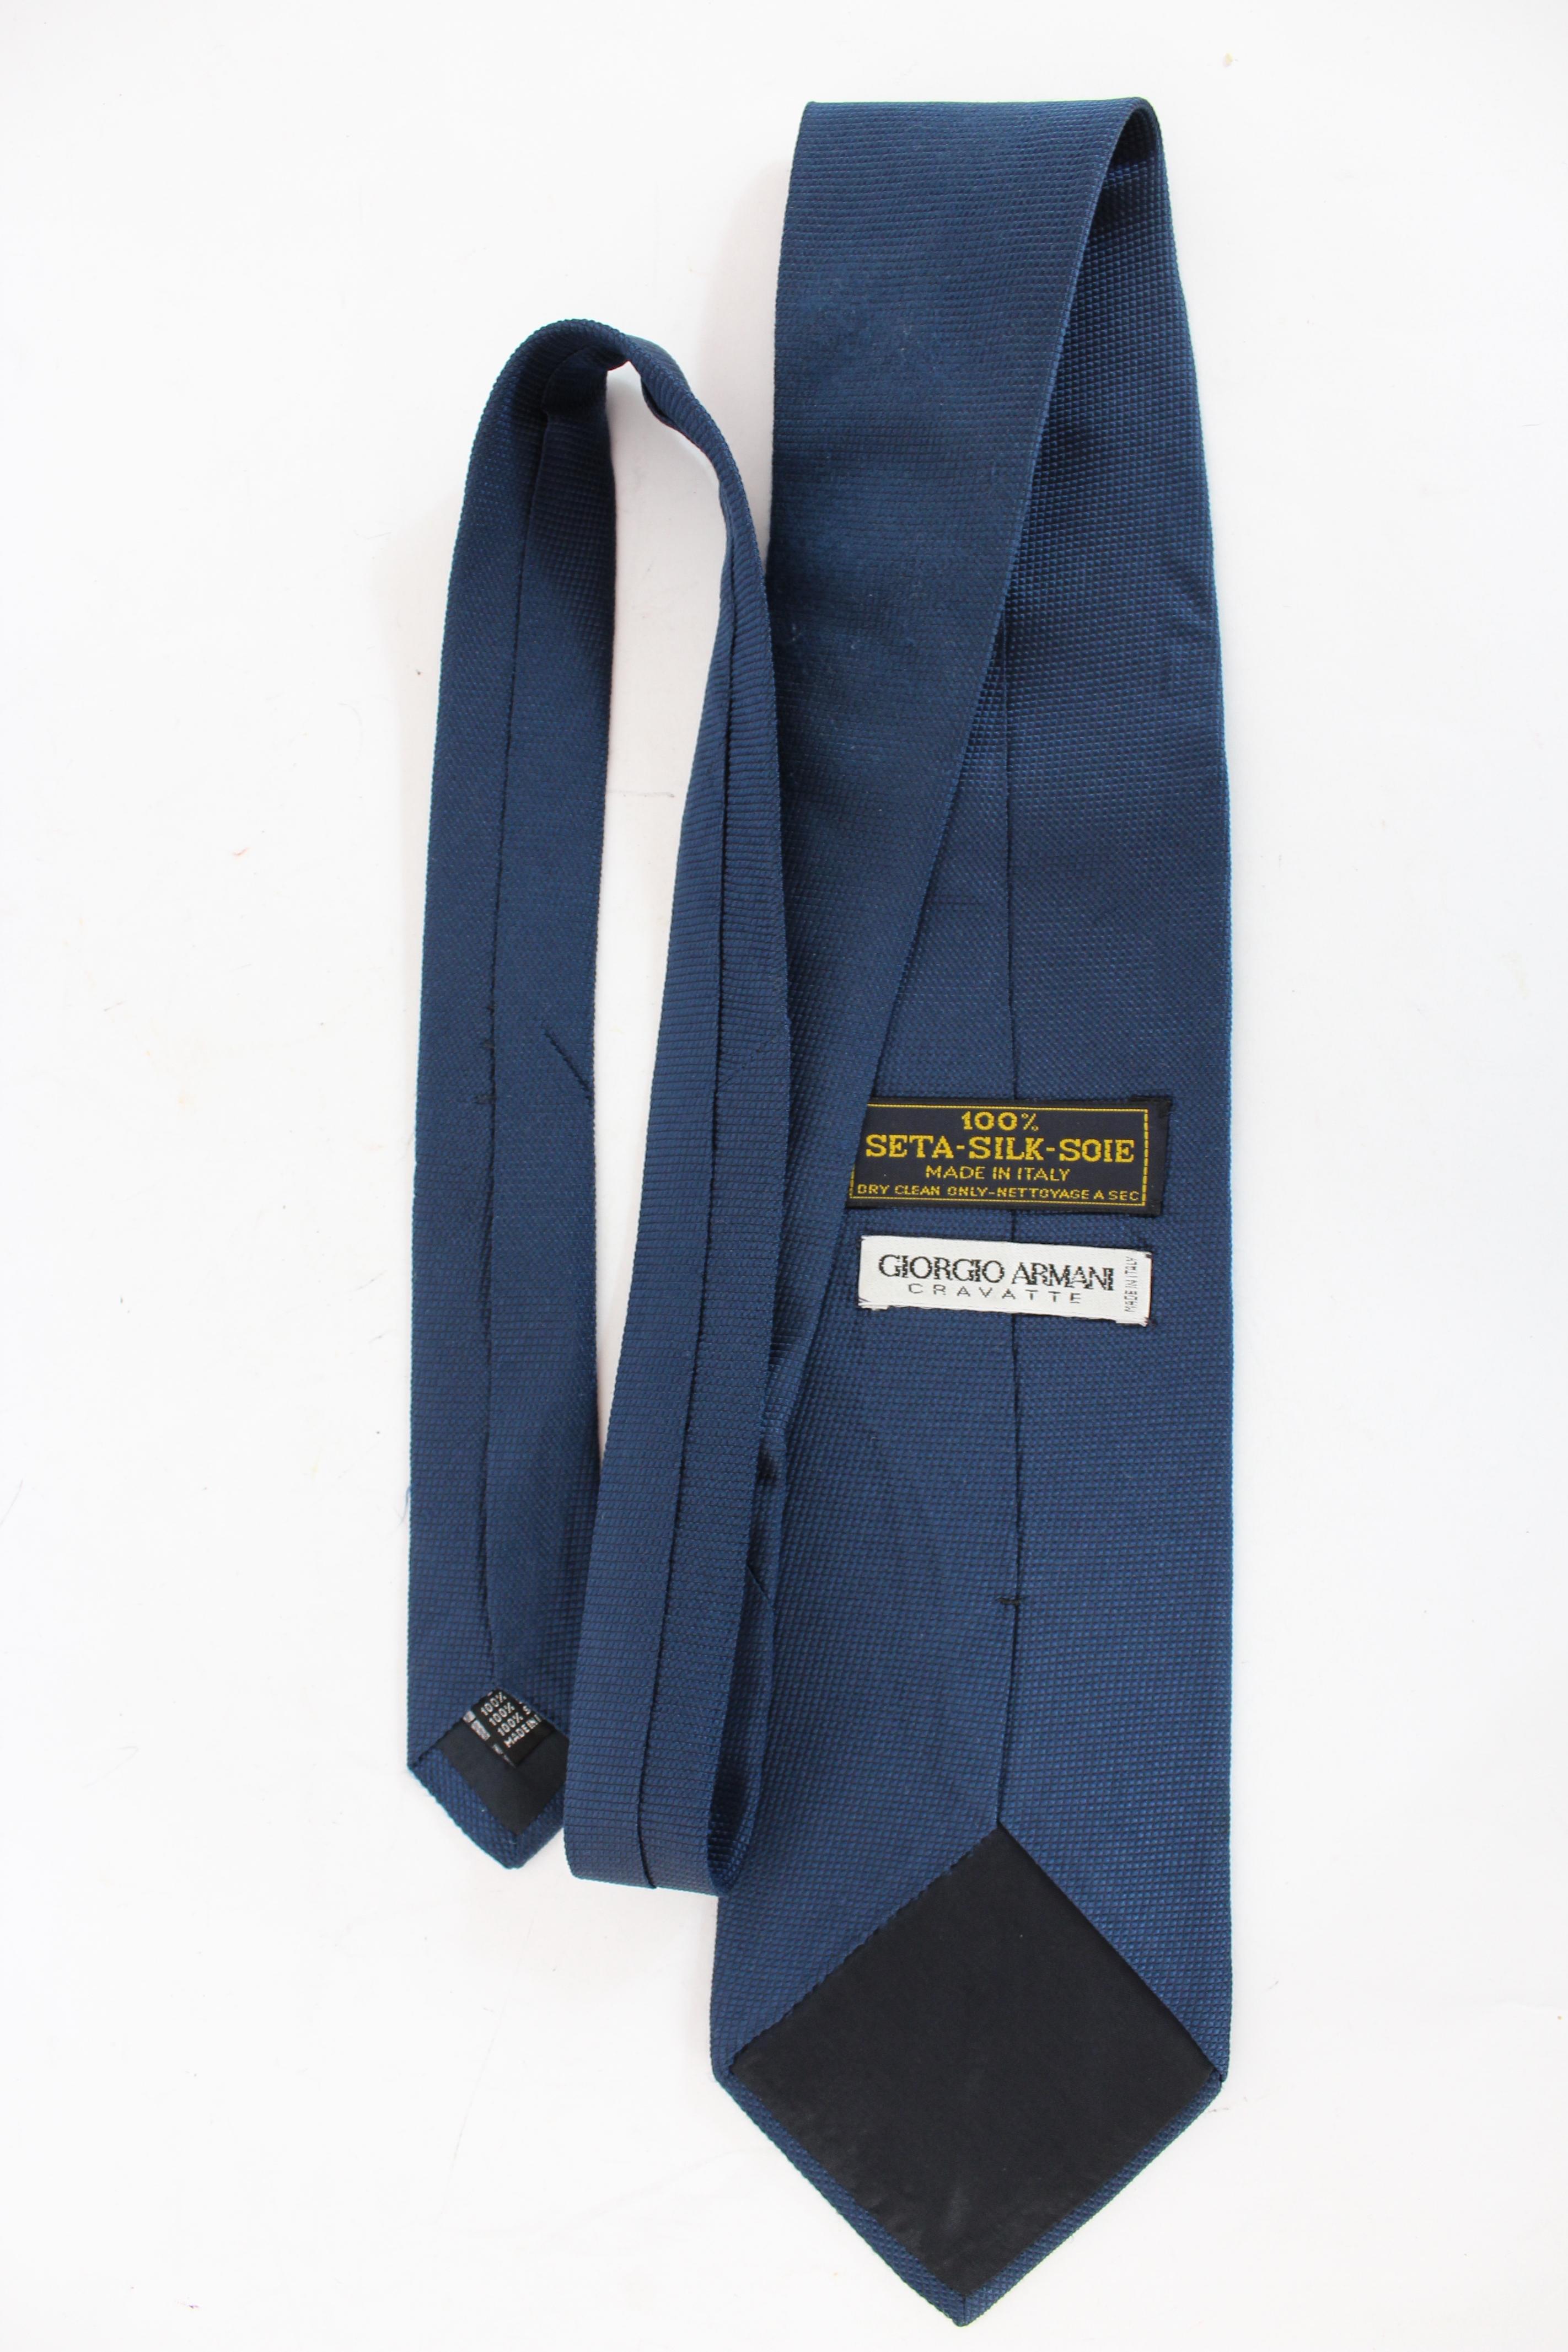 Cravate Yves Saint Laurent Rive Gauche vintage des années 90. Cravate élégante, bleue et grise, à motif rayé. tissu 100% soie. Fabriquées en Italie.

Condition : Excellent

Article utilisé quelques fois, il reste dans son excellent état. Il n'y a